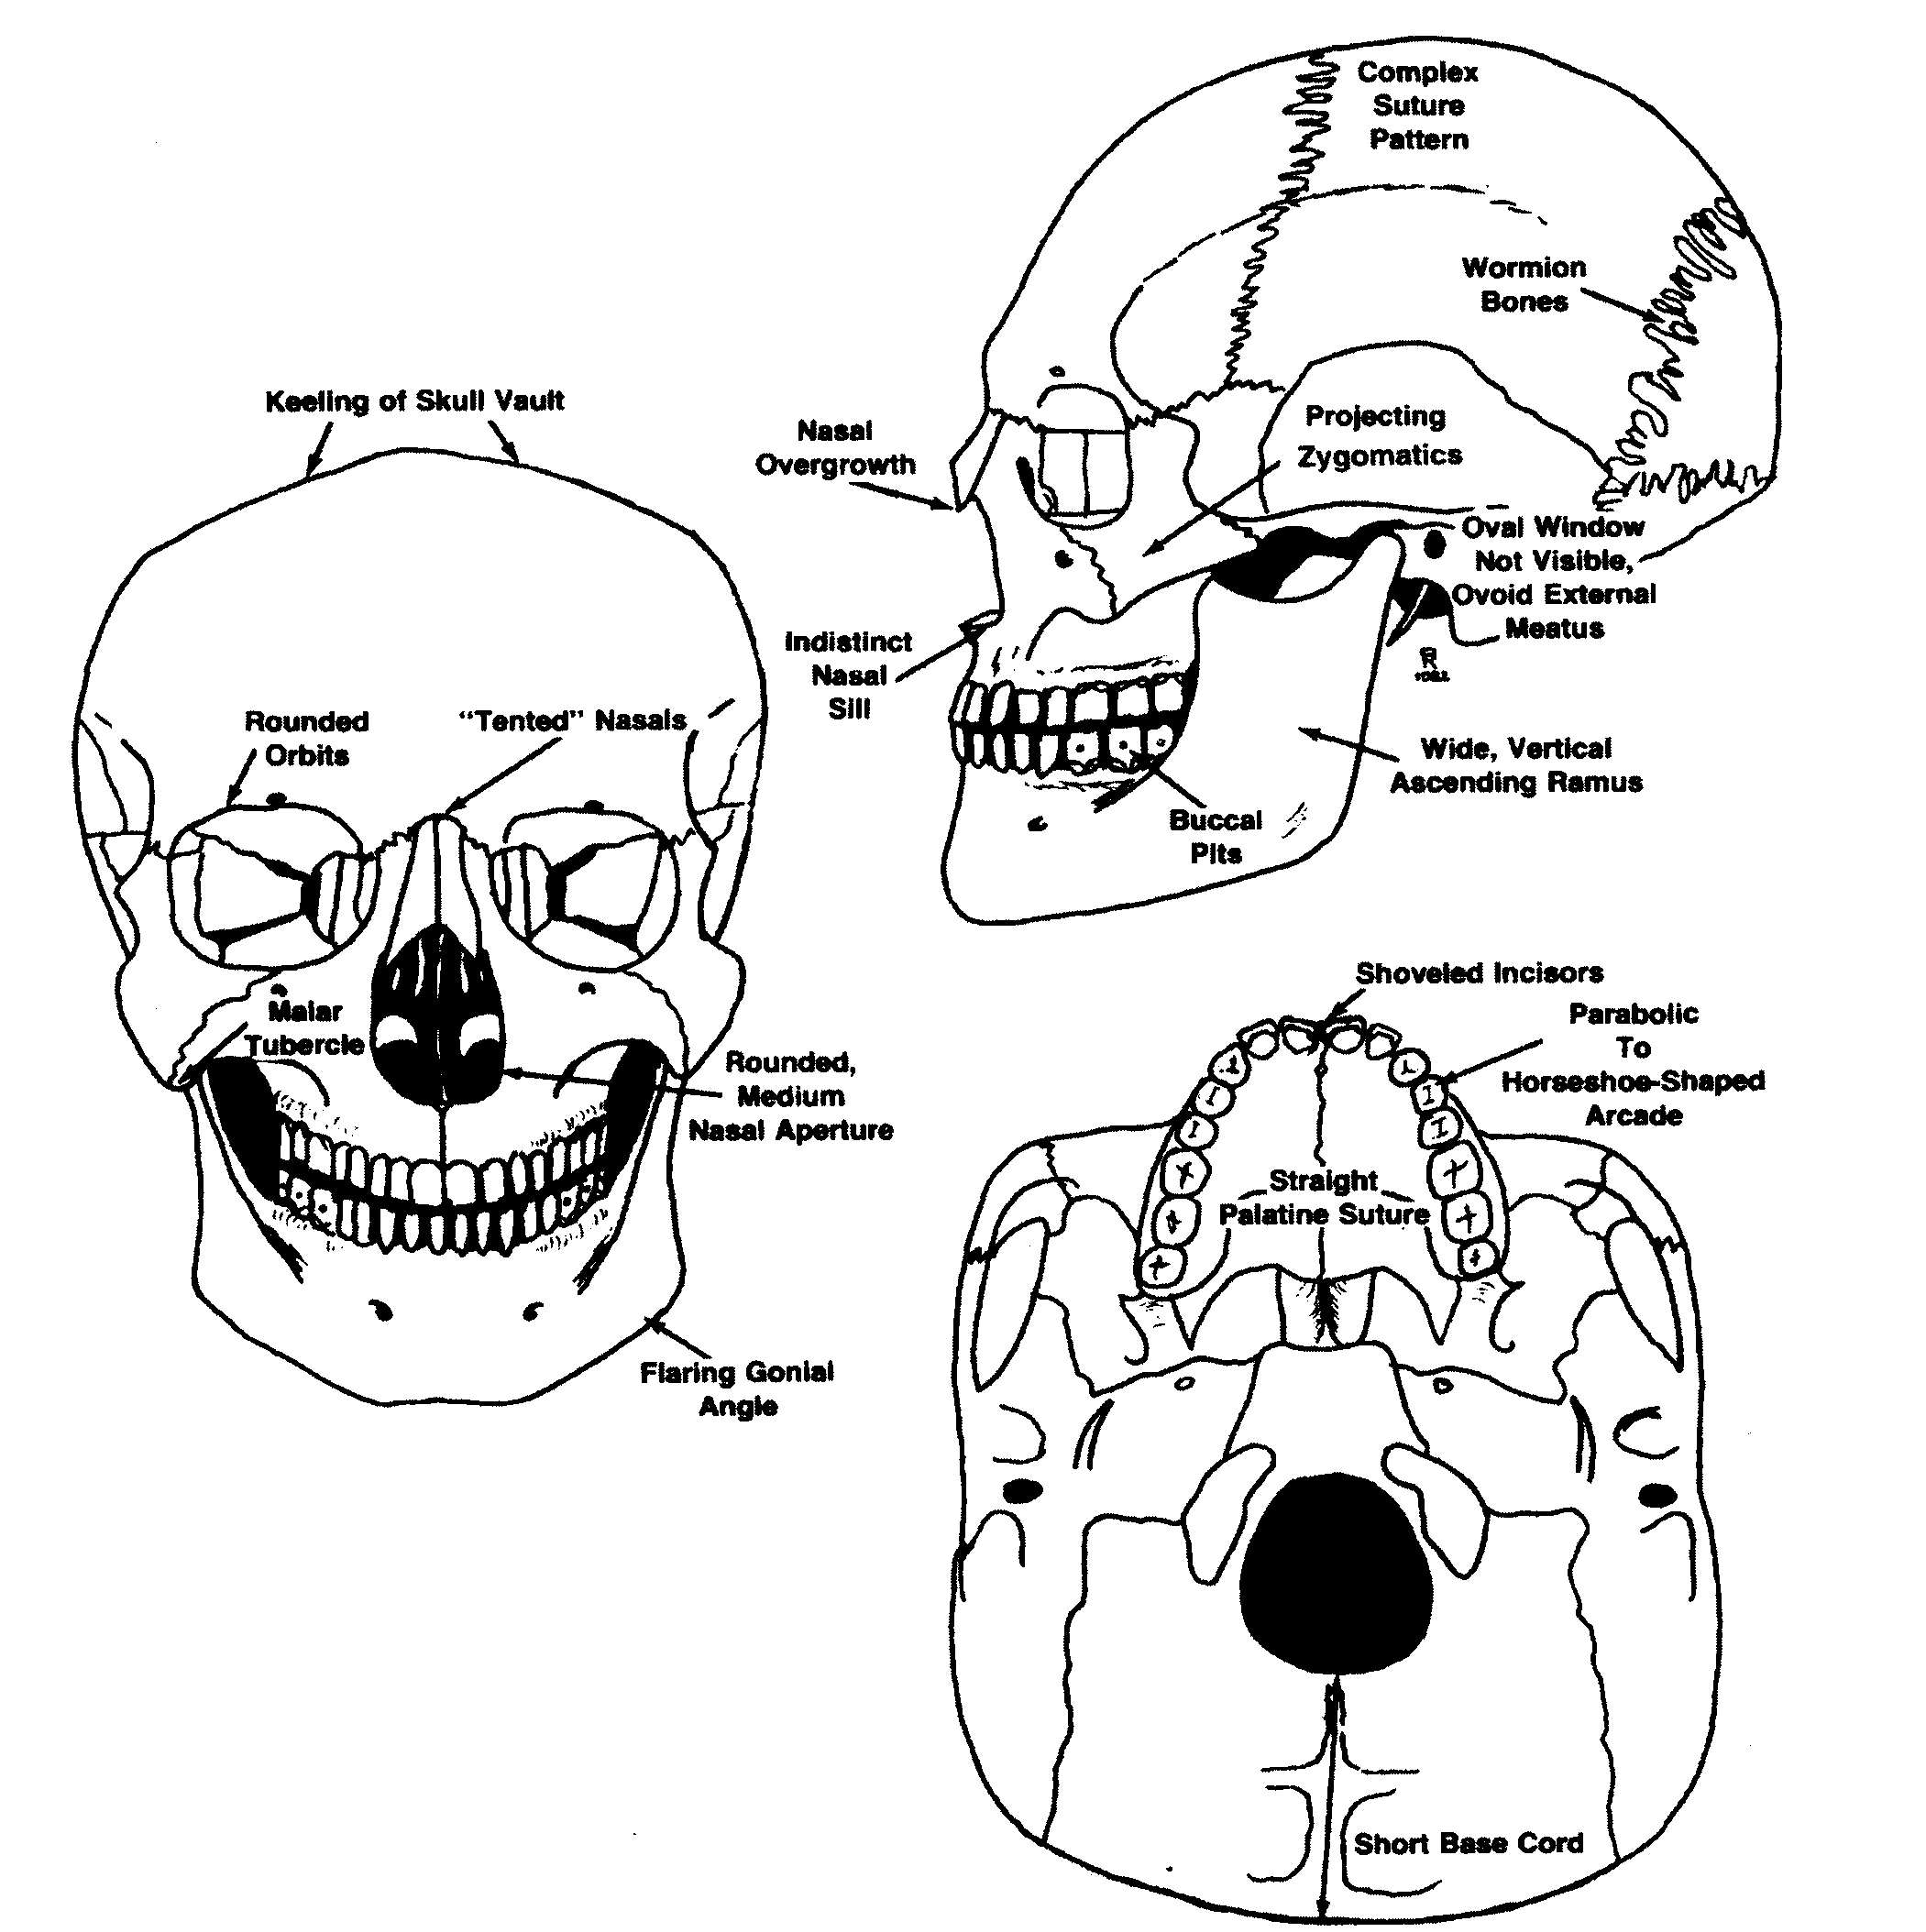 mongoloid skull